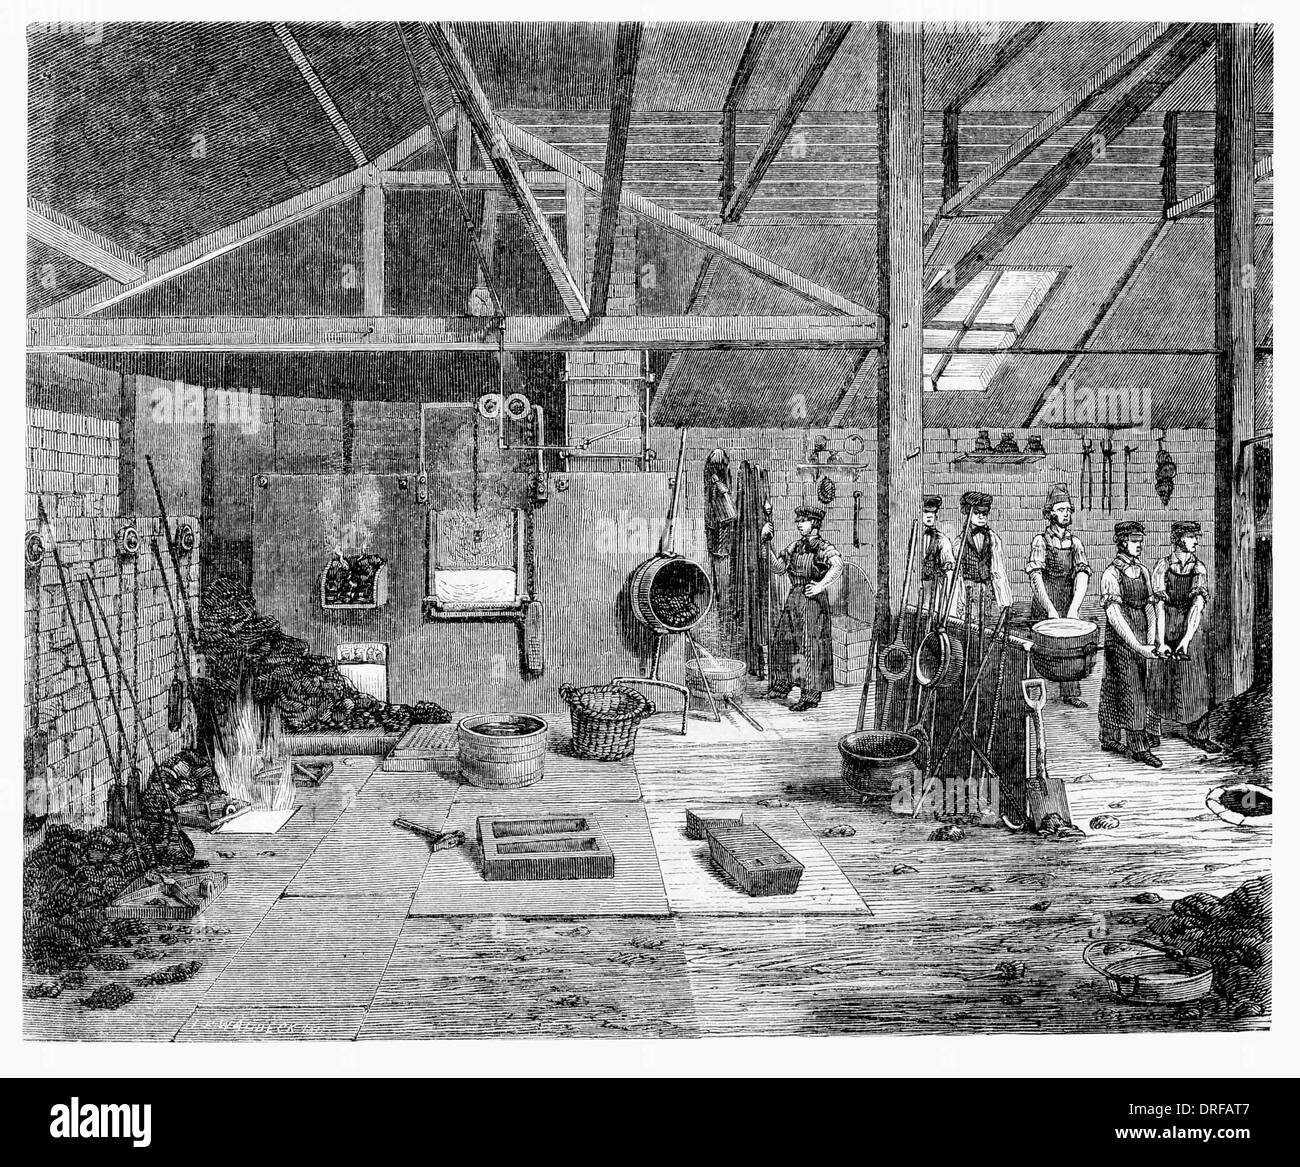 La fundición de fundición de la Campana 1854 Foto de stock